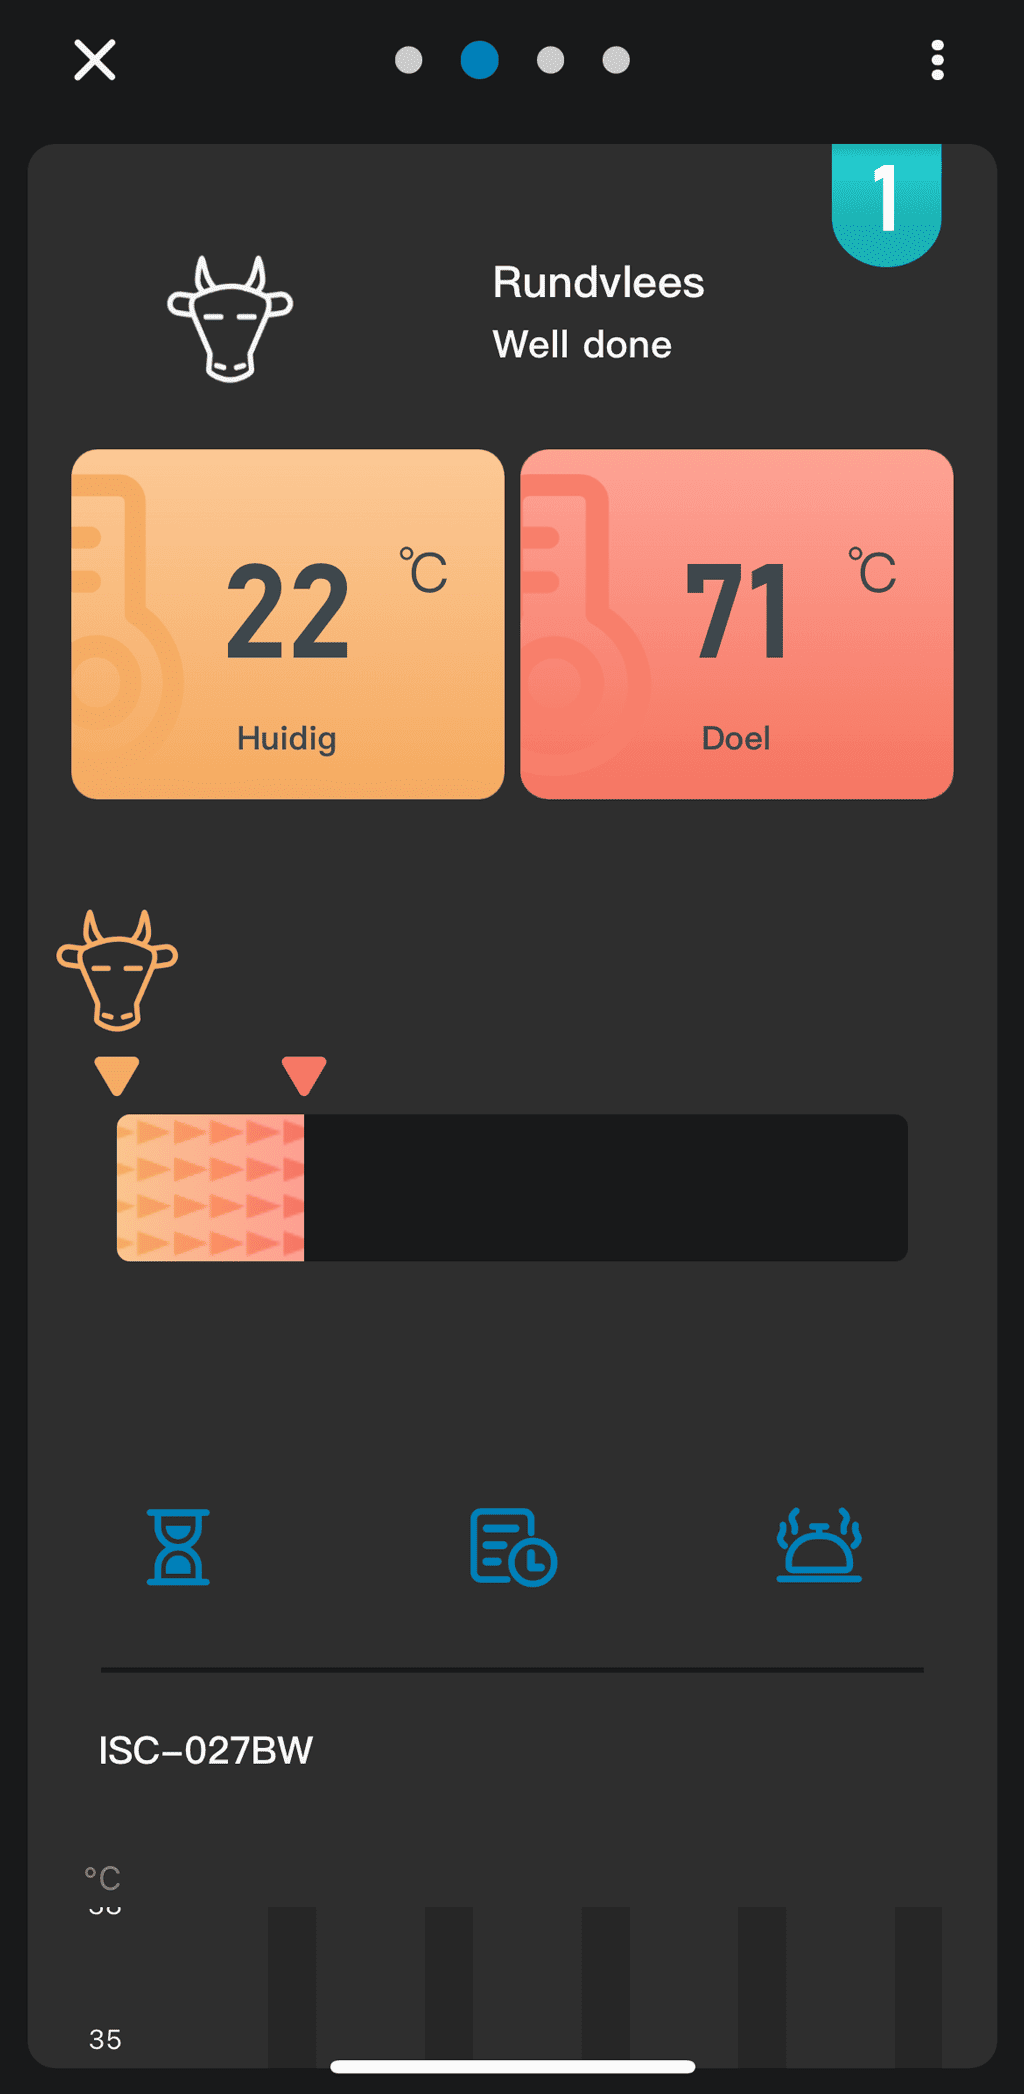 Een screenshot uit de Inkbird app met daarin de huidige- en doeltemperatuur van een rundvlees product